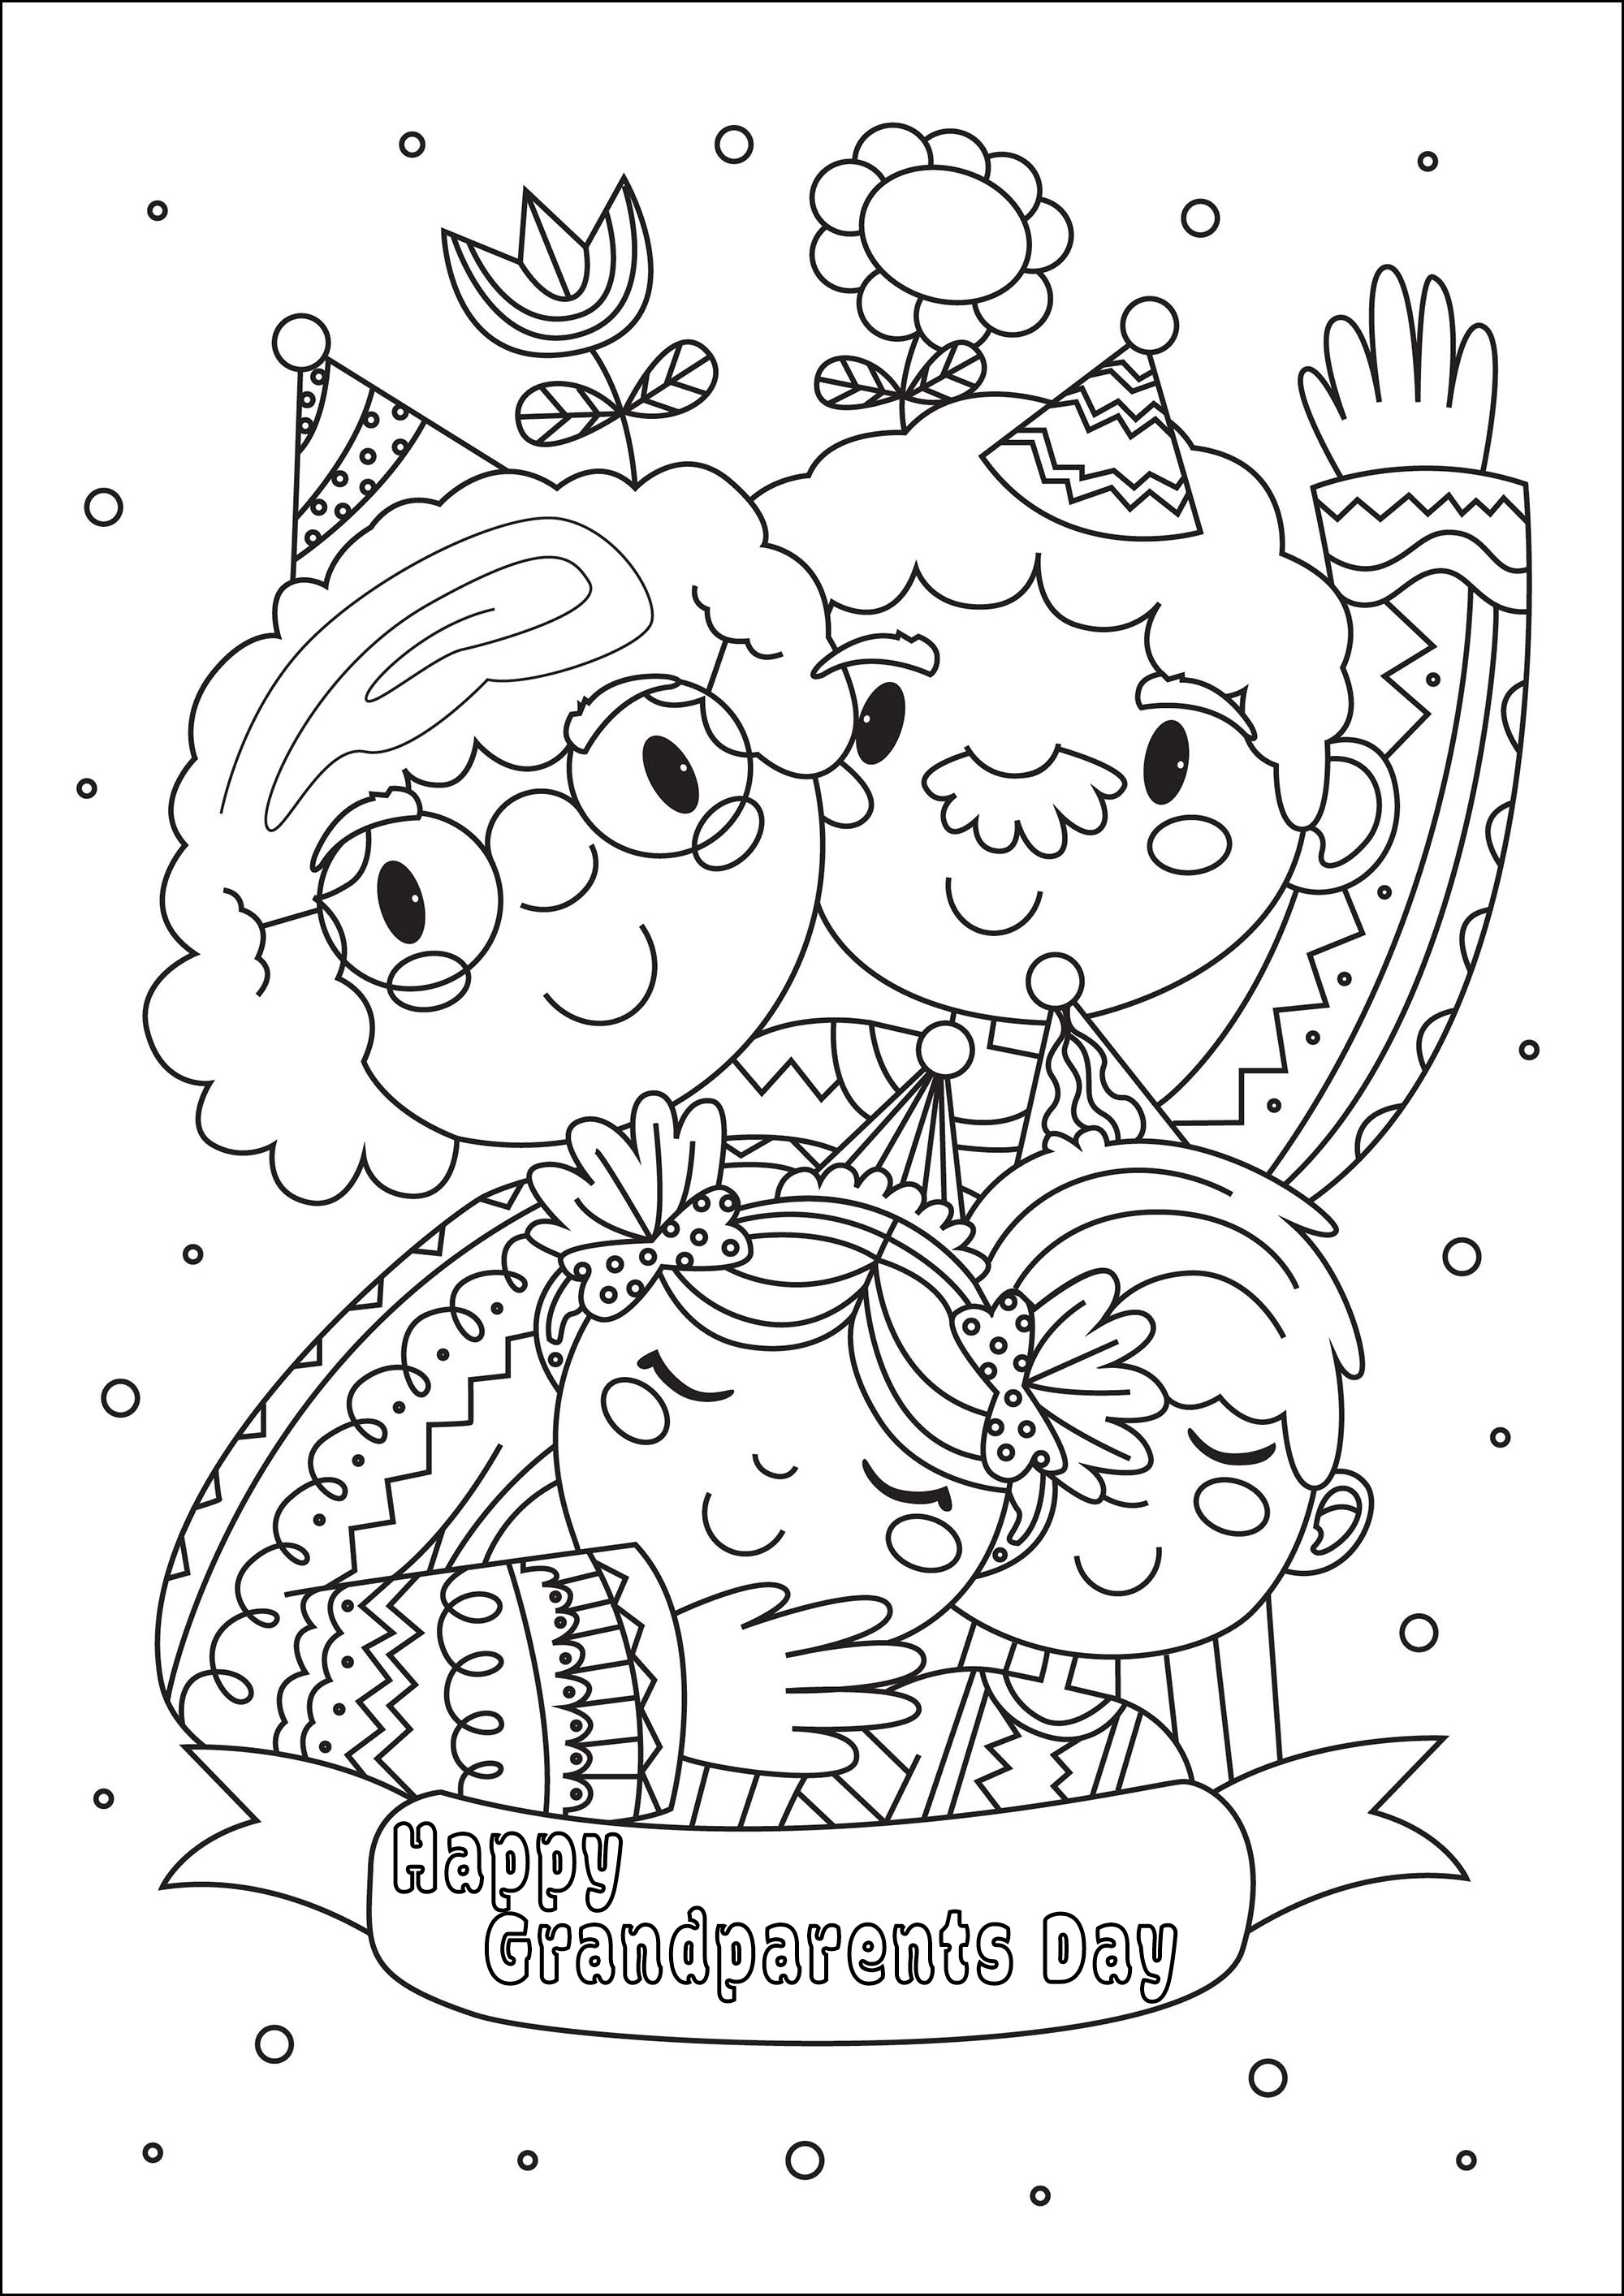 Colorear para el Día de los Abuelos. Una bonita página para colorear con dos niños, su abuelo y su abuela, Artista : Gaelle Picard